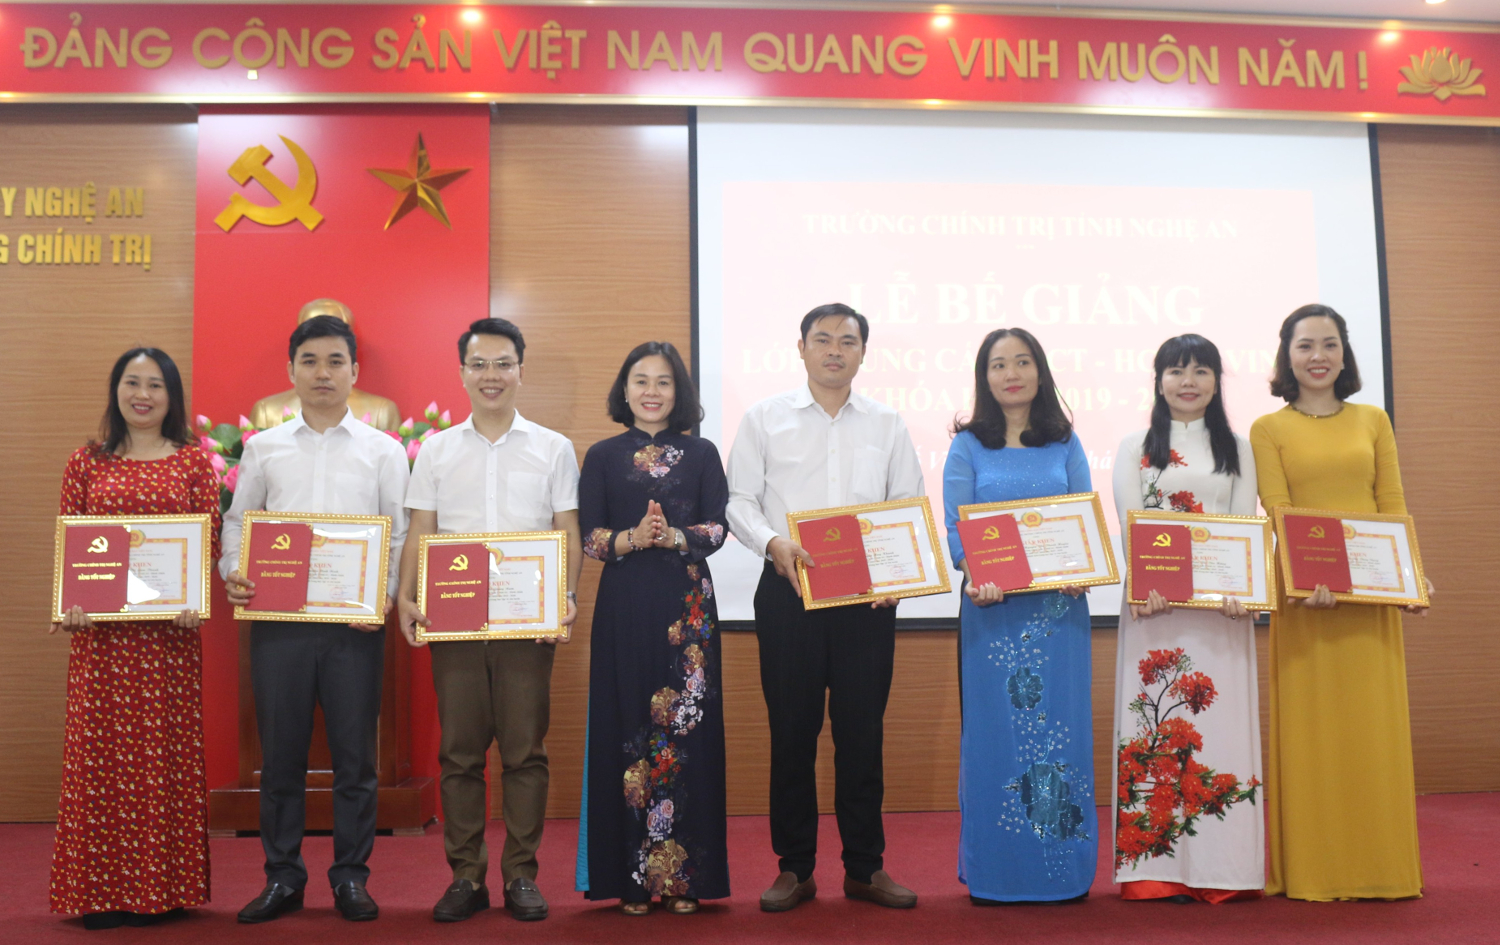 Bế giảng lớp Trung cấp lý luận chính trị - hành chính K19 thành phố Vinh, khóa học 2019-2020